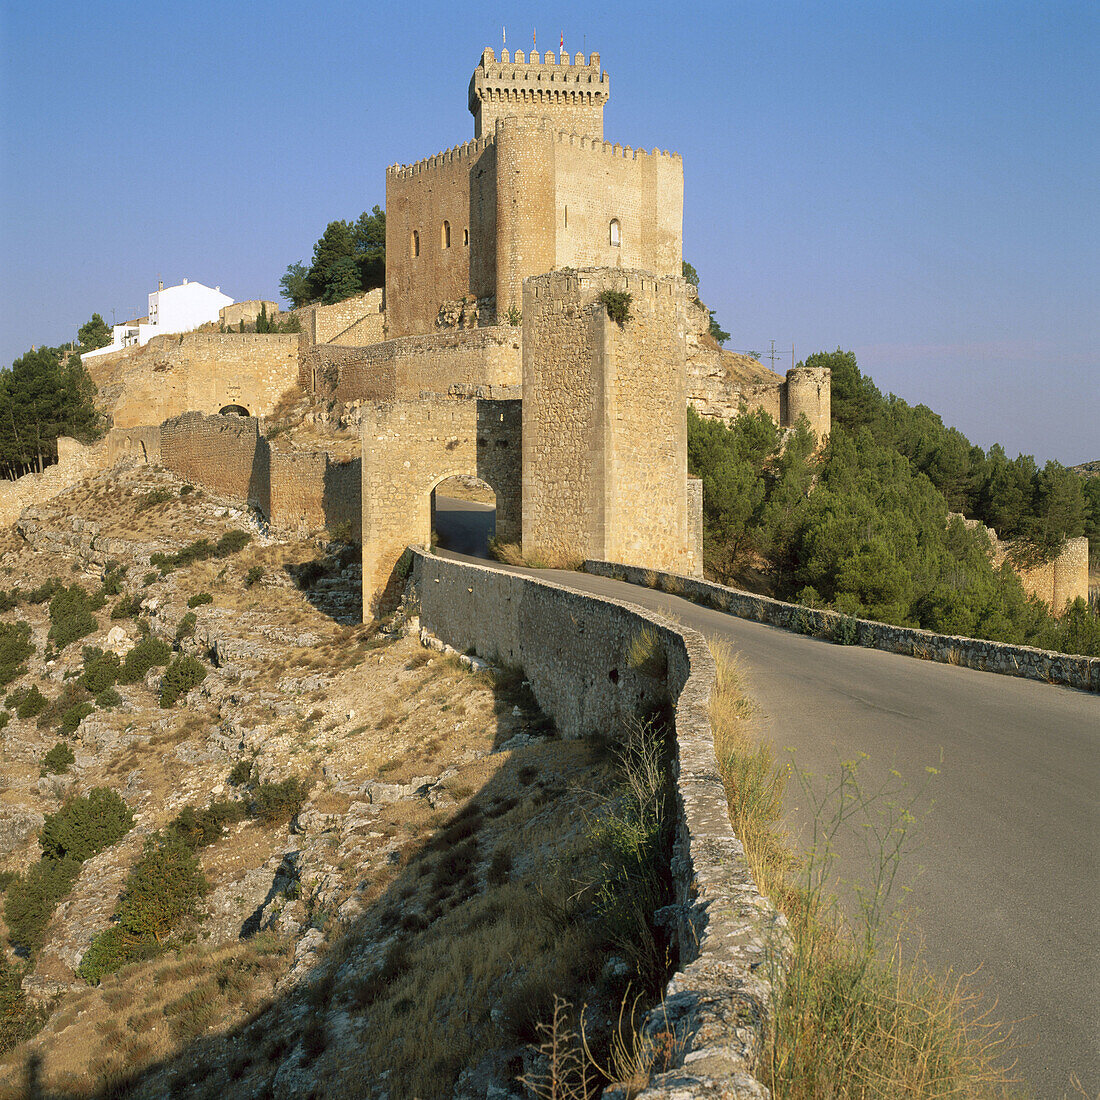 Marques de Villena Castle (now Parador Nacional, a state run hotel), Alarcón, Cuenca province, Castilla-La Mancha, Spain